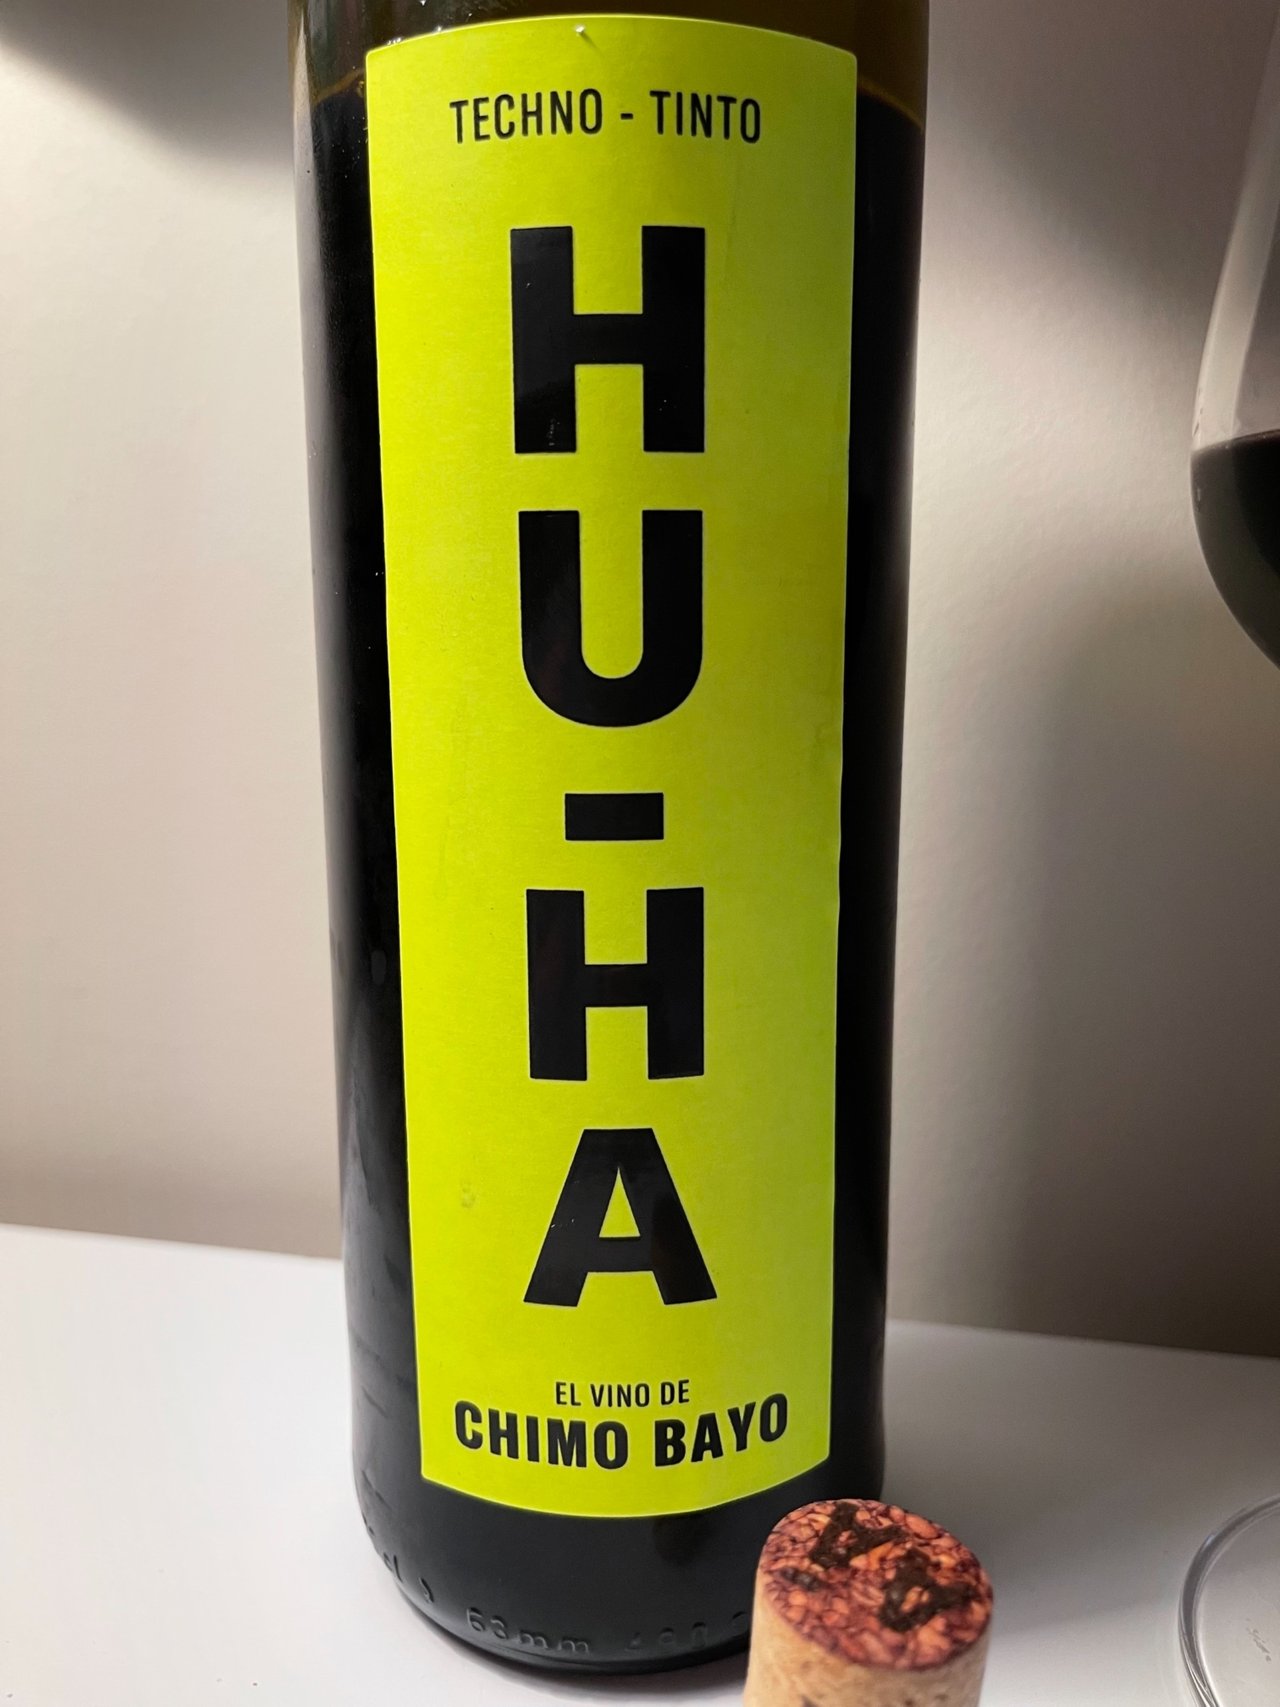 El mejor vino para comer bacalao es de Chimo Bayo y se llama 'Hu-Ha